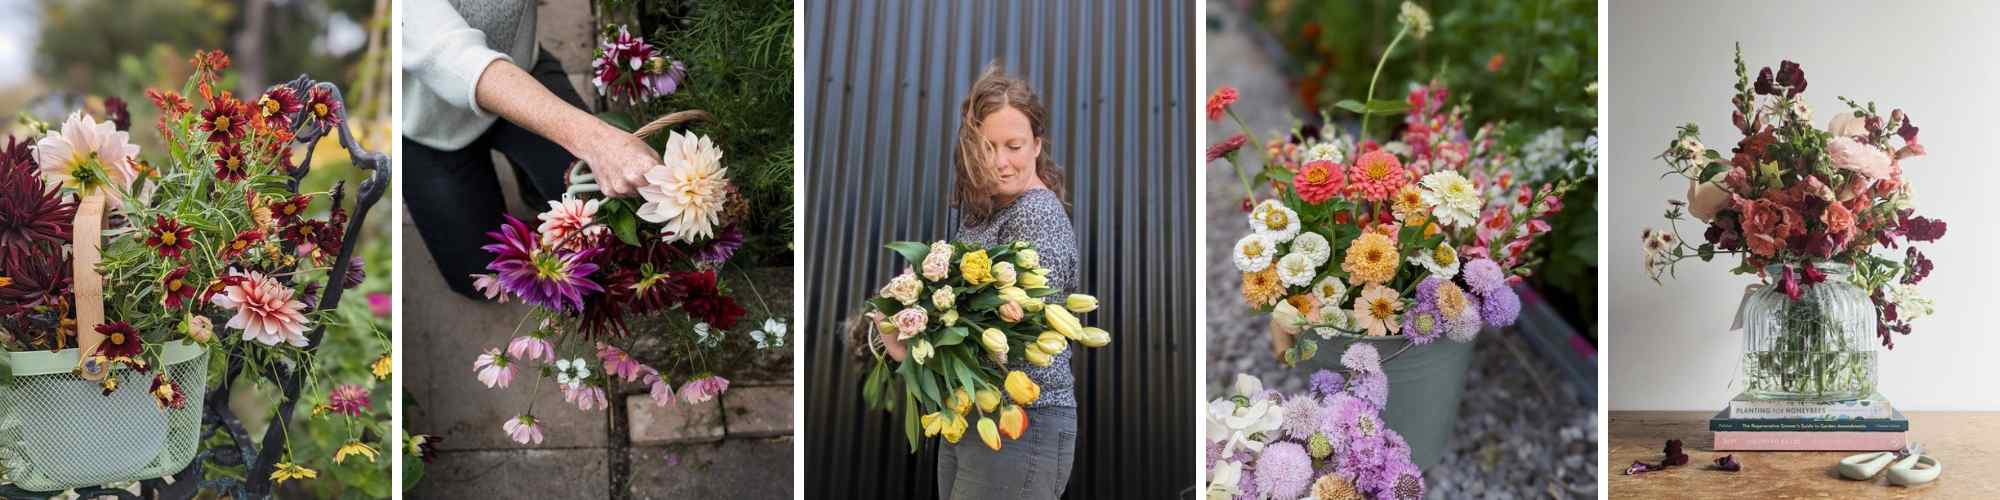 Floral Workshops Collage